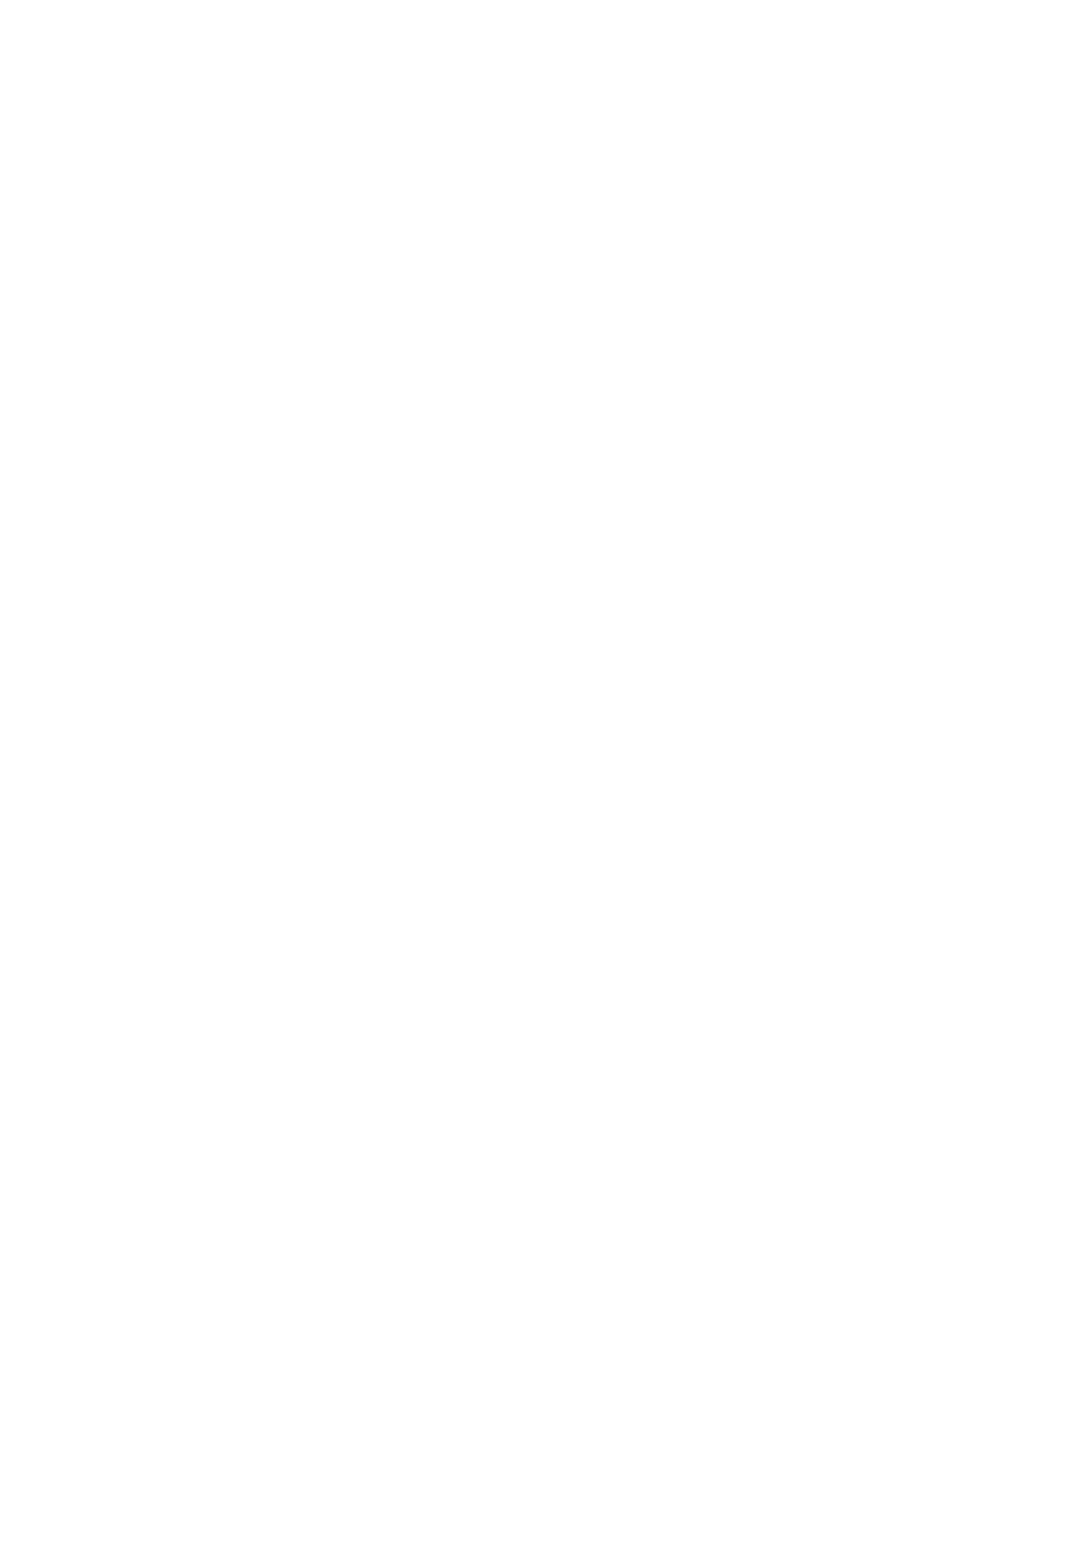 Li-Cycle logo pour fonds sombres (PNG transparent)